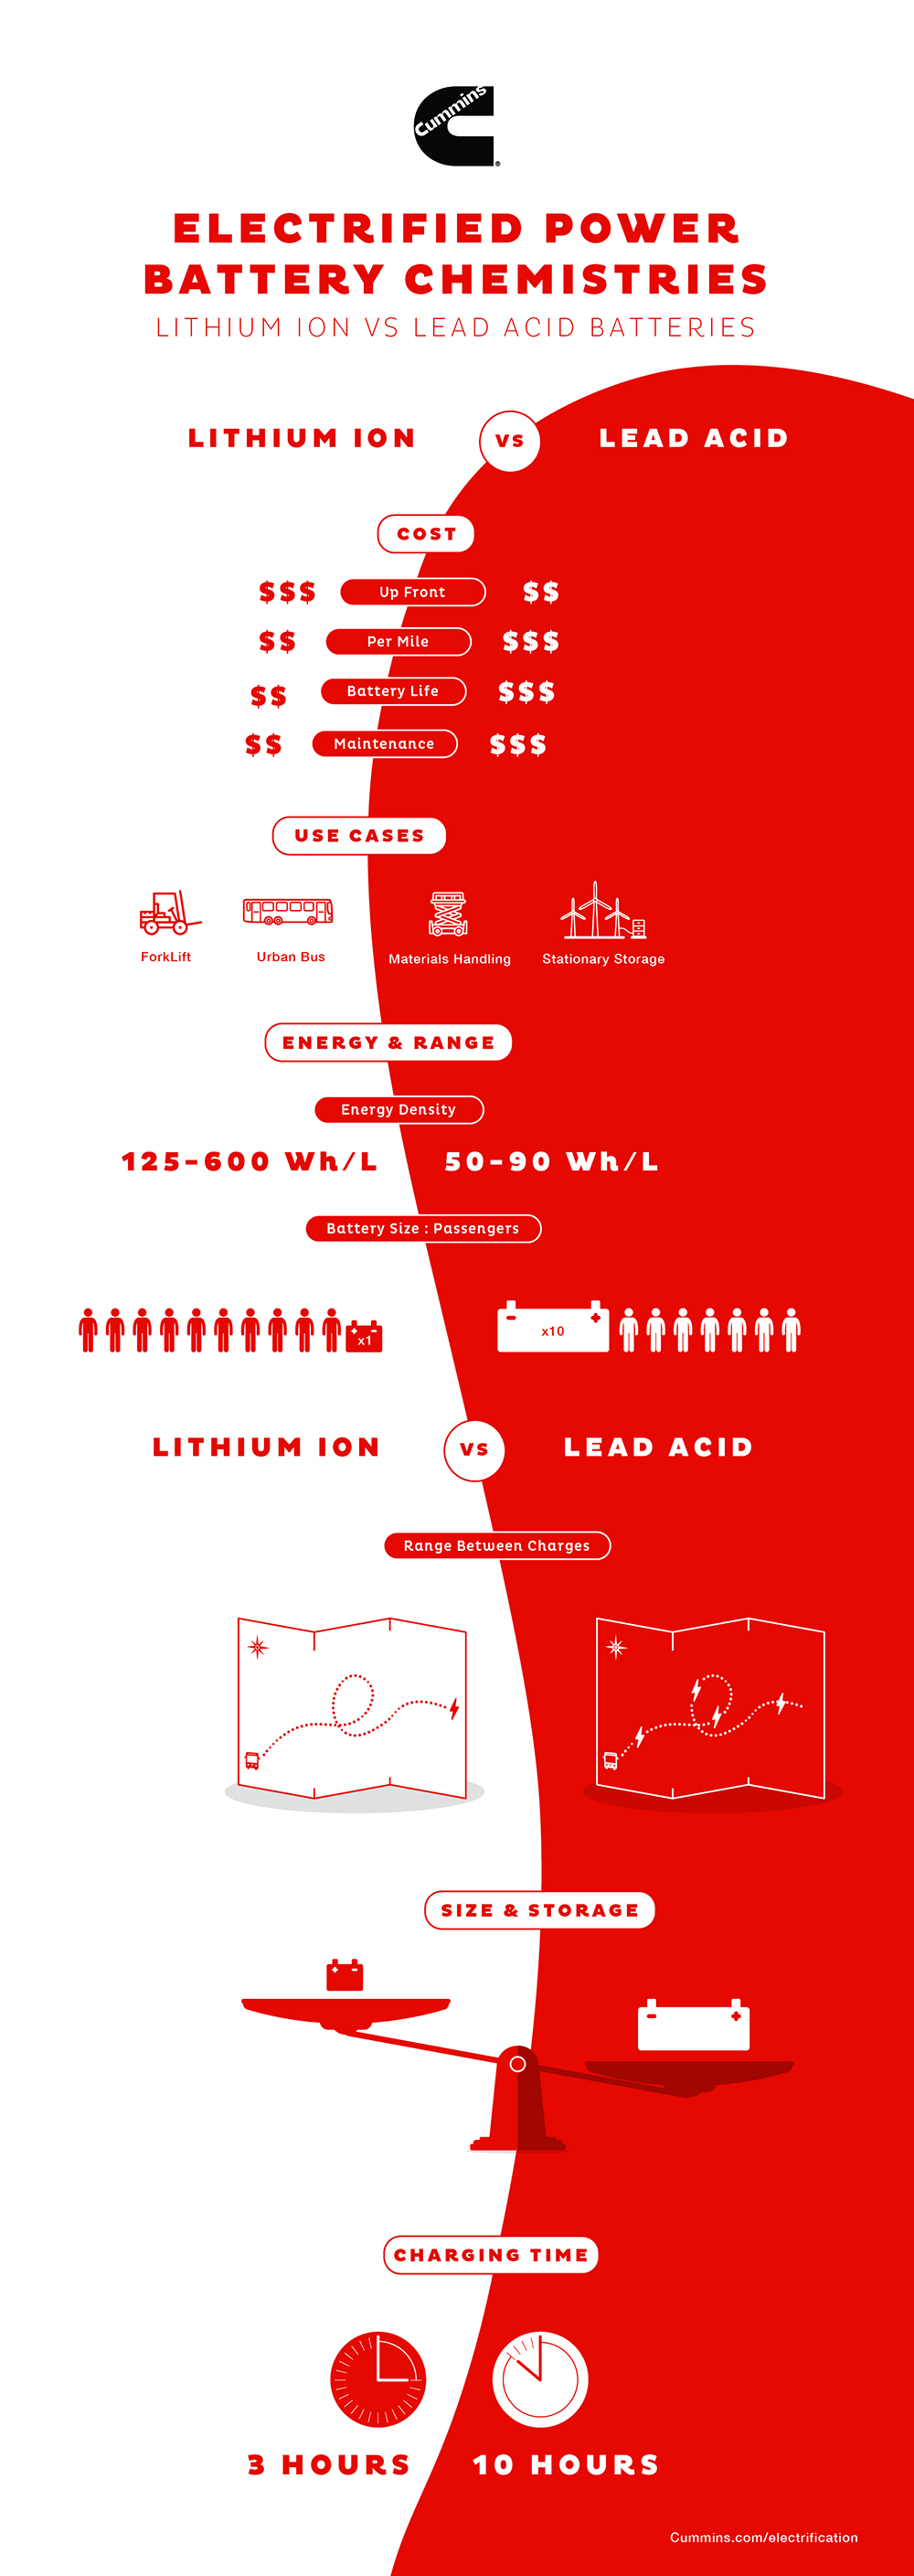 Lithium ion vs lead acid battery